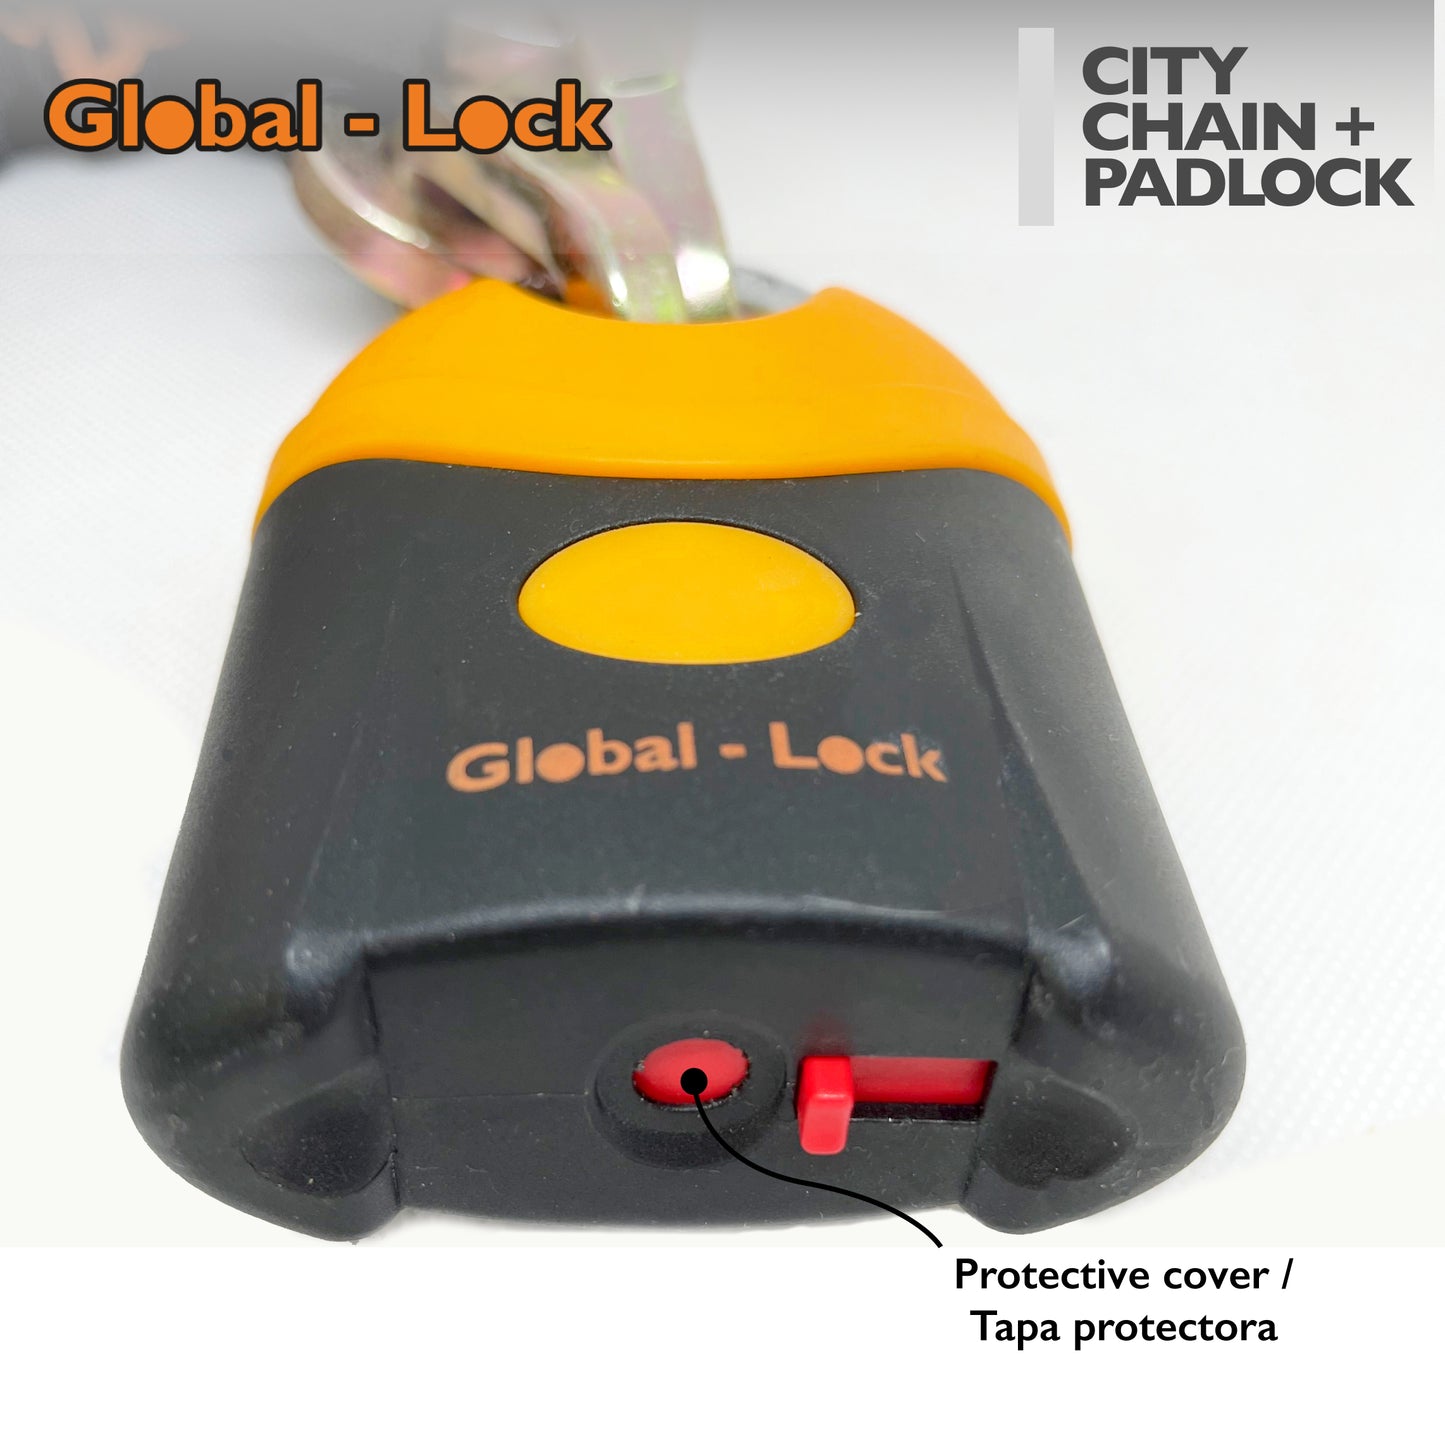 Kit catena + lucchetto Global-Lock CITY